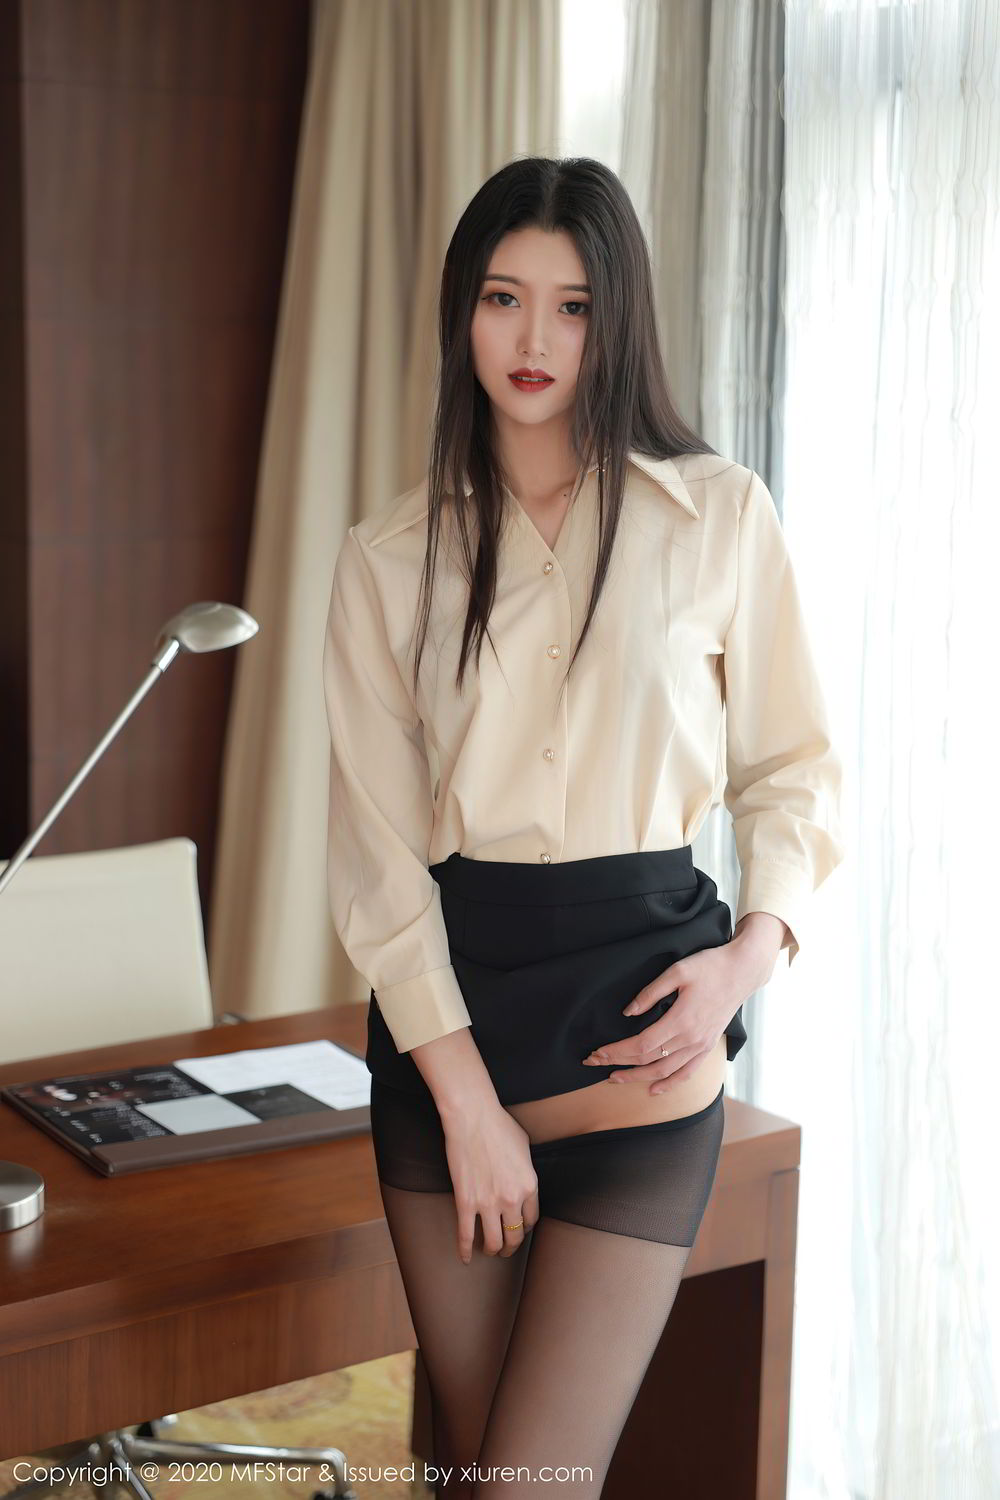 身材高挑的老板生活女秘书陈一涵制服短裙黑丝